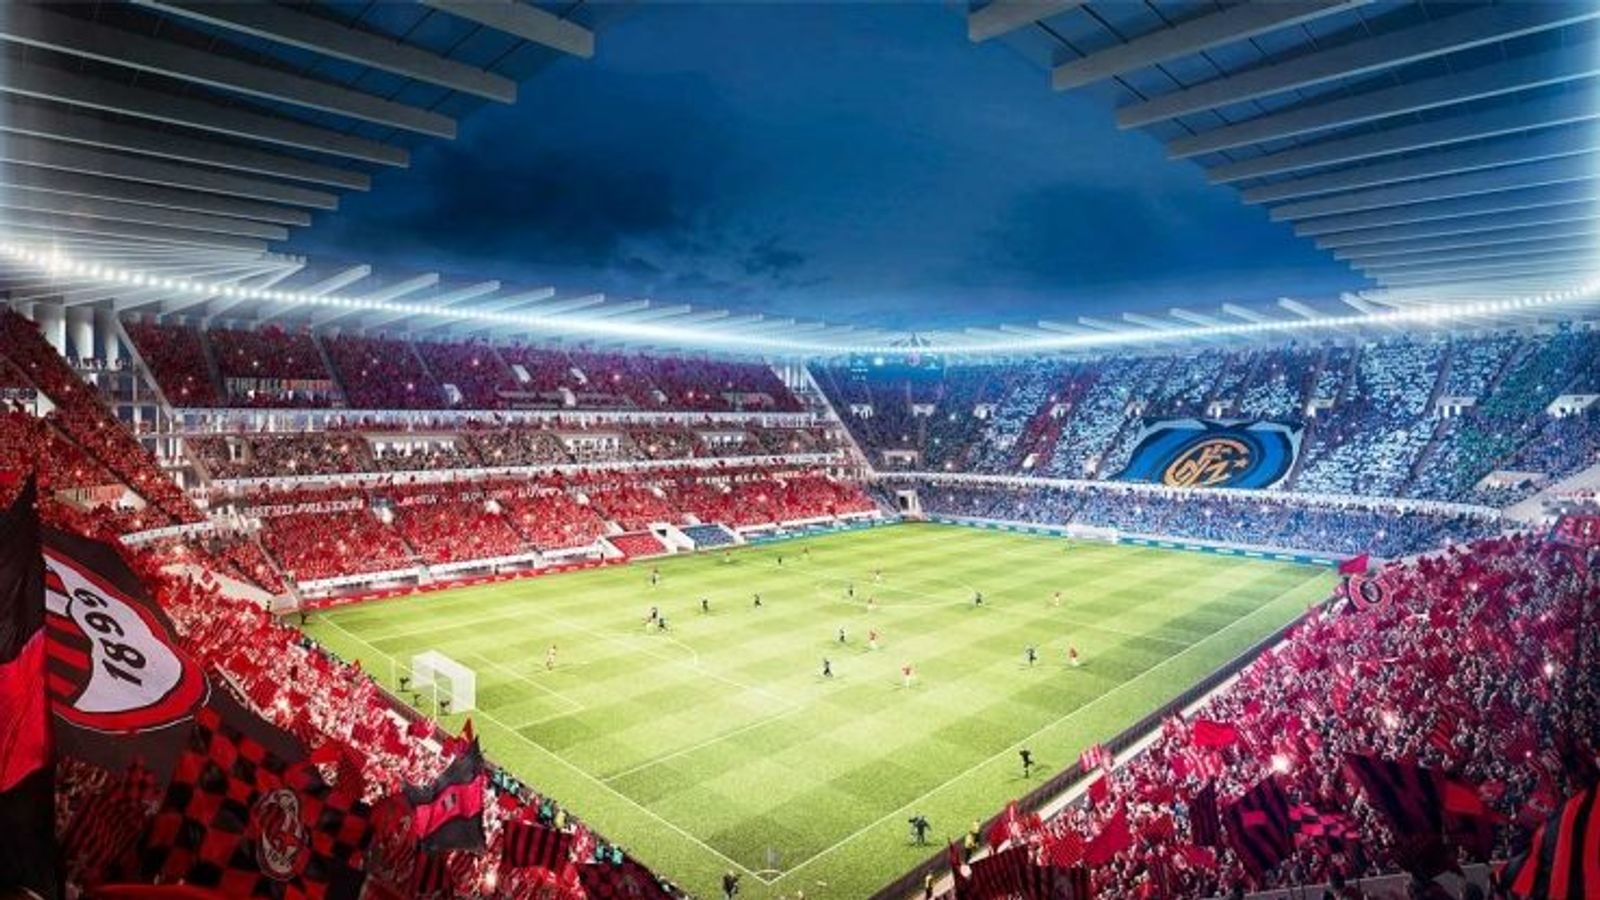 Inter Milan and AC Milan reveal new stadium designs - Flipboard